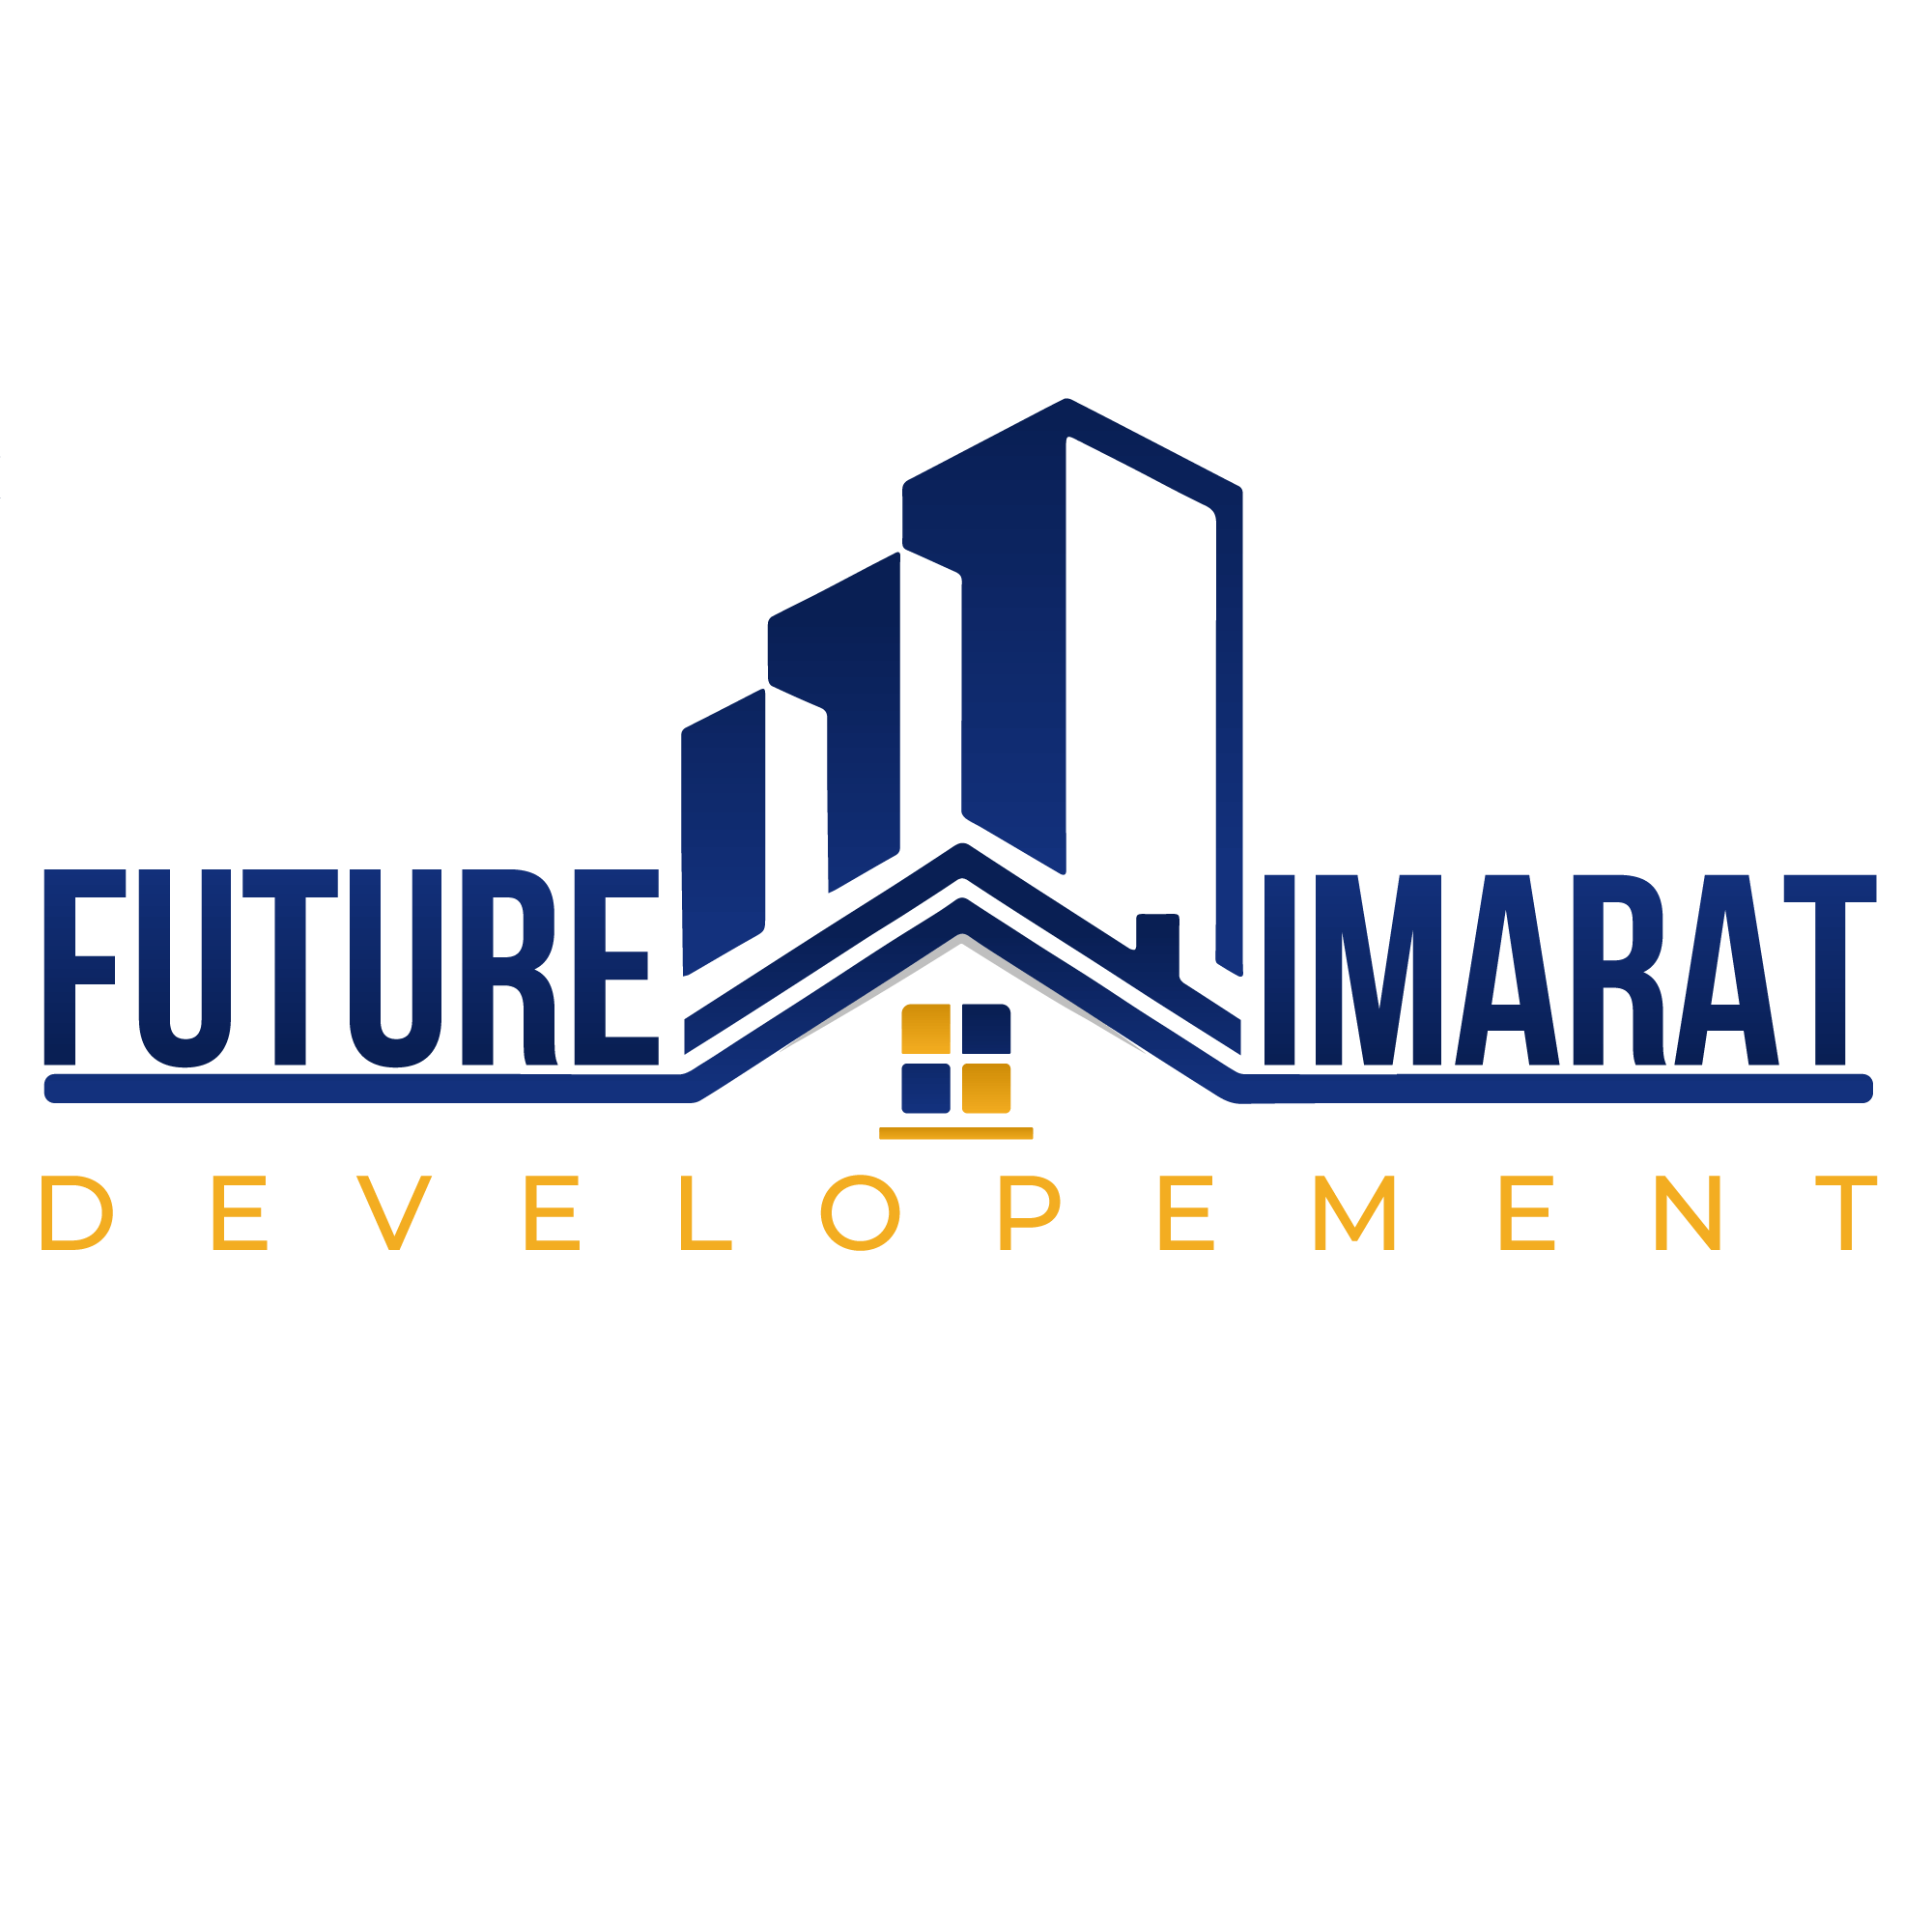 Future Development Logo For Real Estate